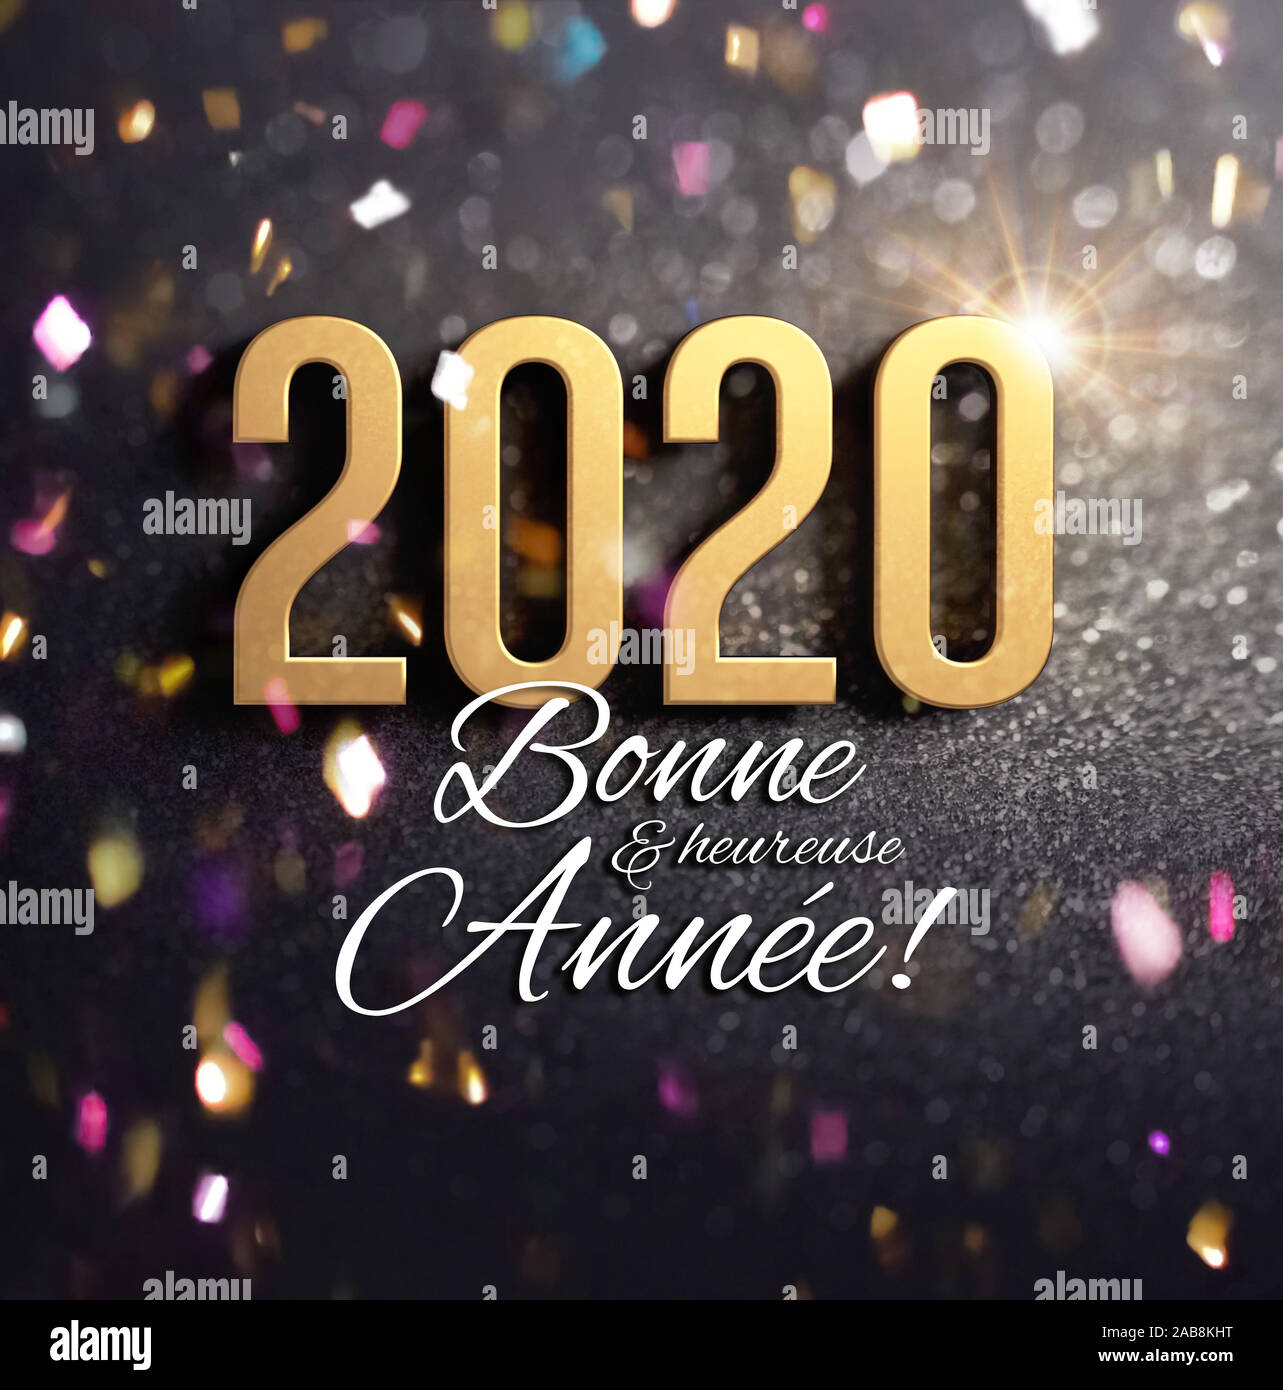 Neues Jahr: 2020 Gold gefärbt und Grüße in französischer Sprache, eine feierliche schwarzer Hintergrund, mit Glitter und Konfetti - 3D-Darstellung Stockfoto